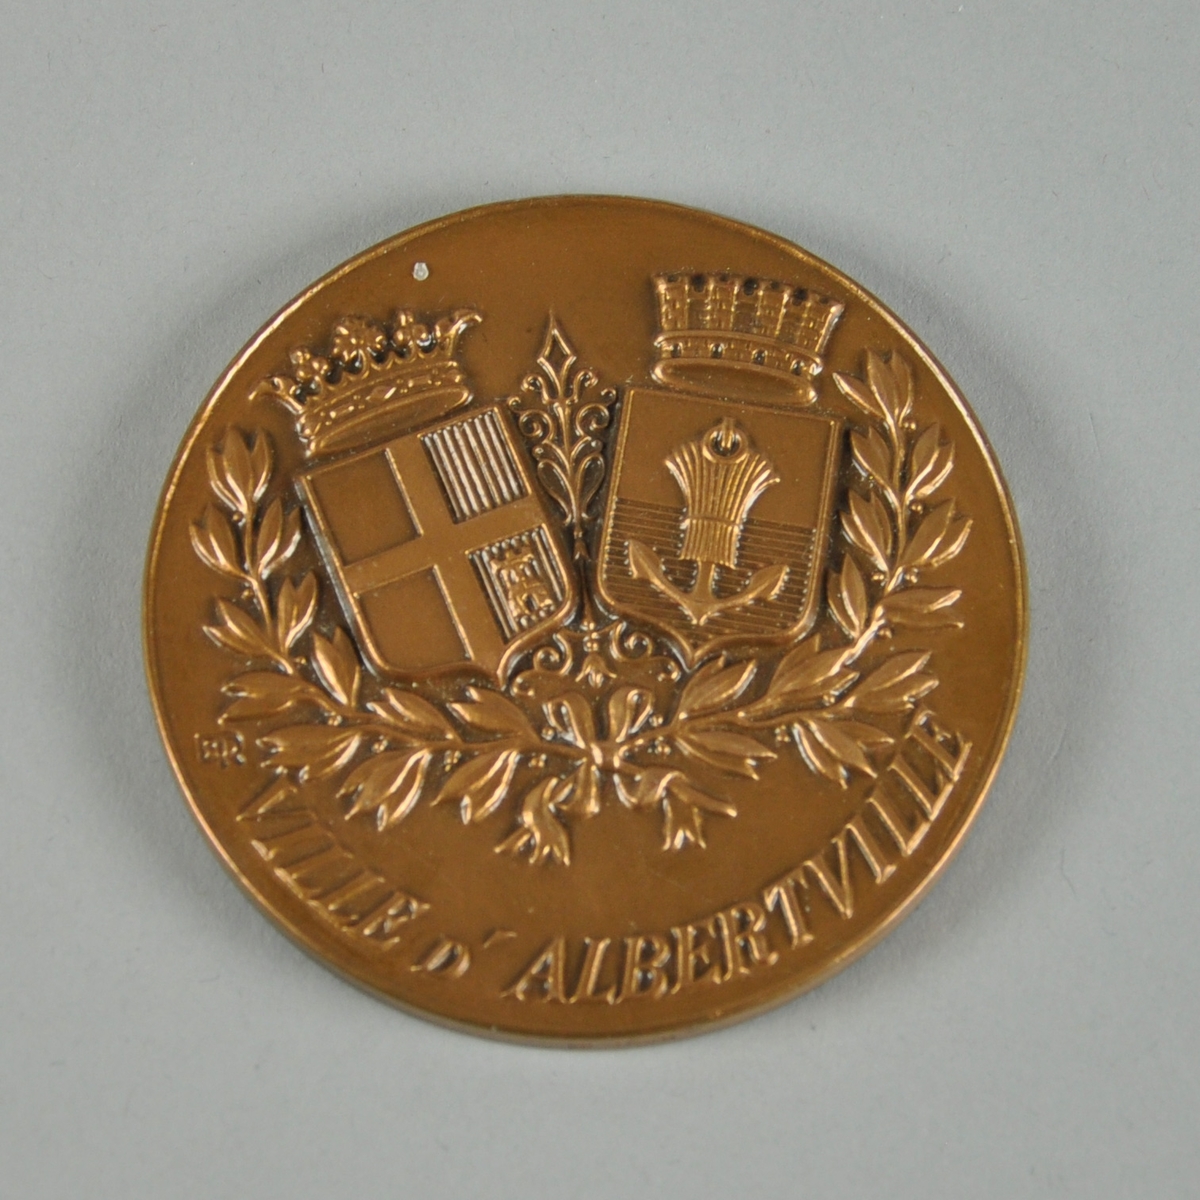 Bronsefarget medalje med motiv av to våpenskjold og det som ser ut til å være en olivenkrans. Med medaljen følger det en boks. Ligger i en rød eske av kartong med rødt fløyelsfôr og hvitt silkefôr.